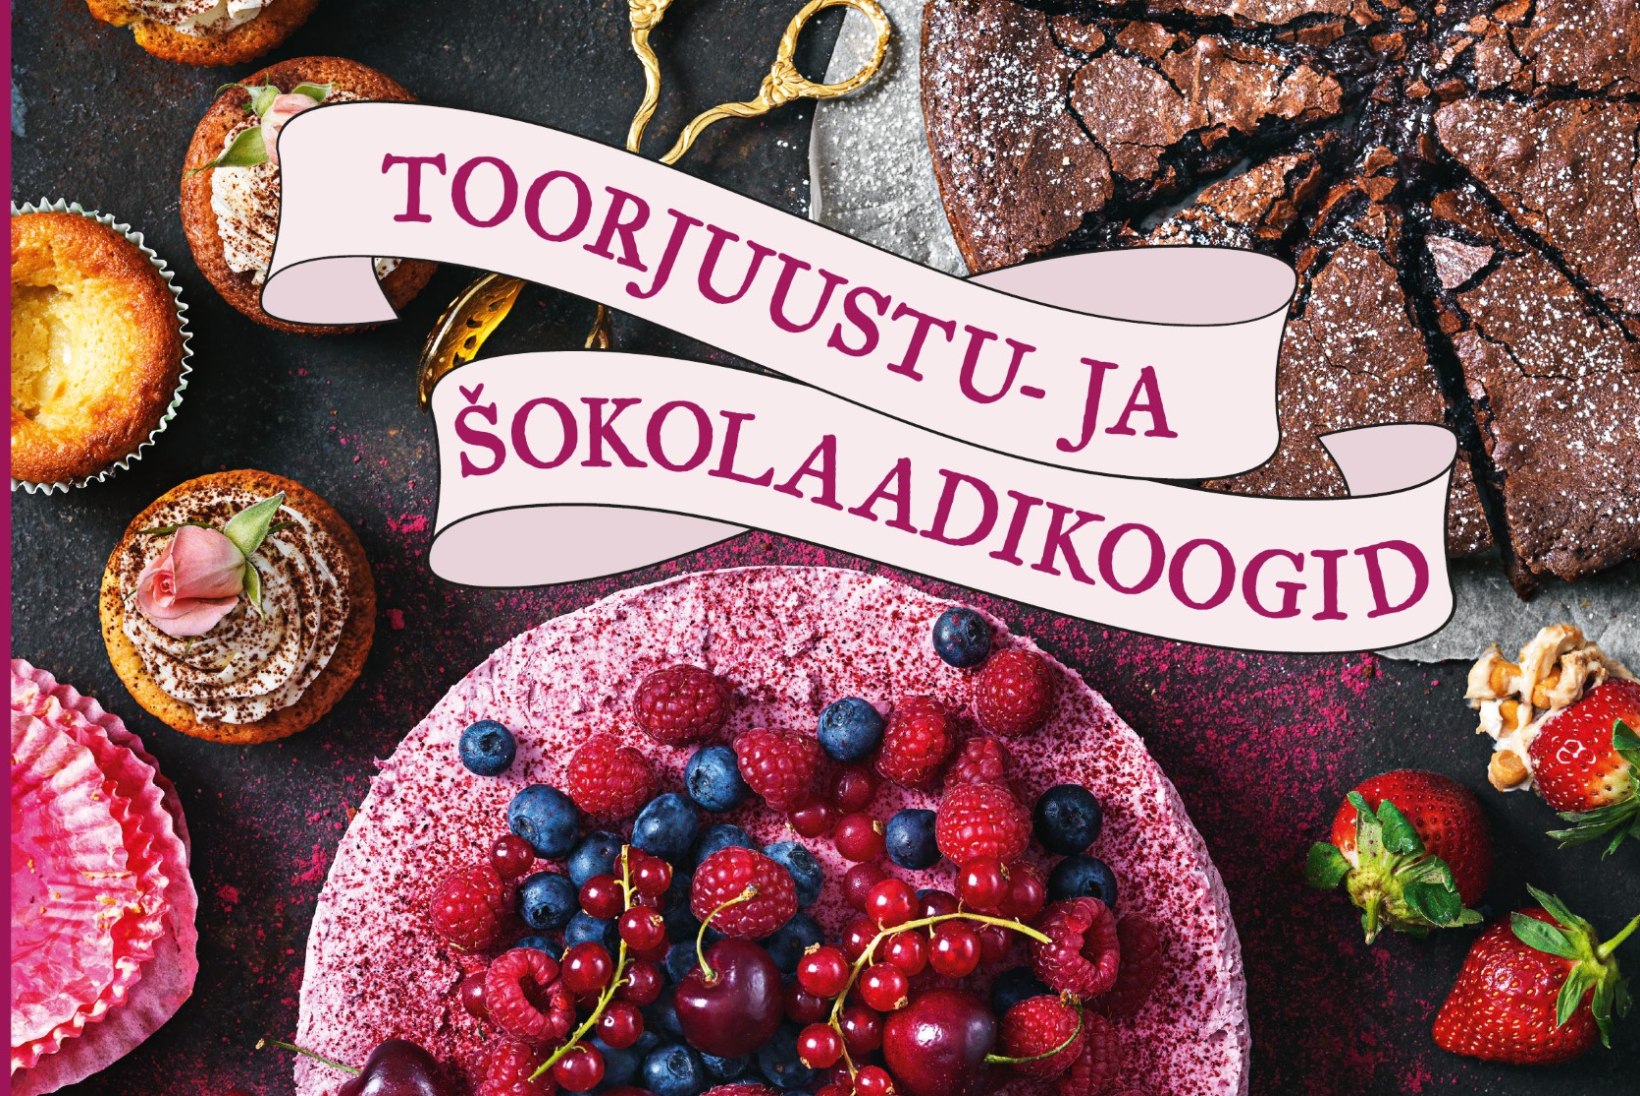 Rootsi koogikuninganna ploomi-toorjuustukook valge šokolaadiga